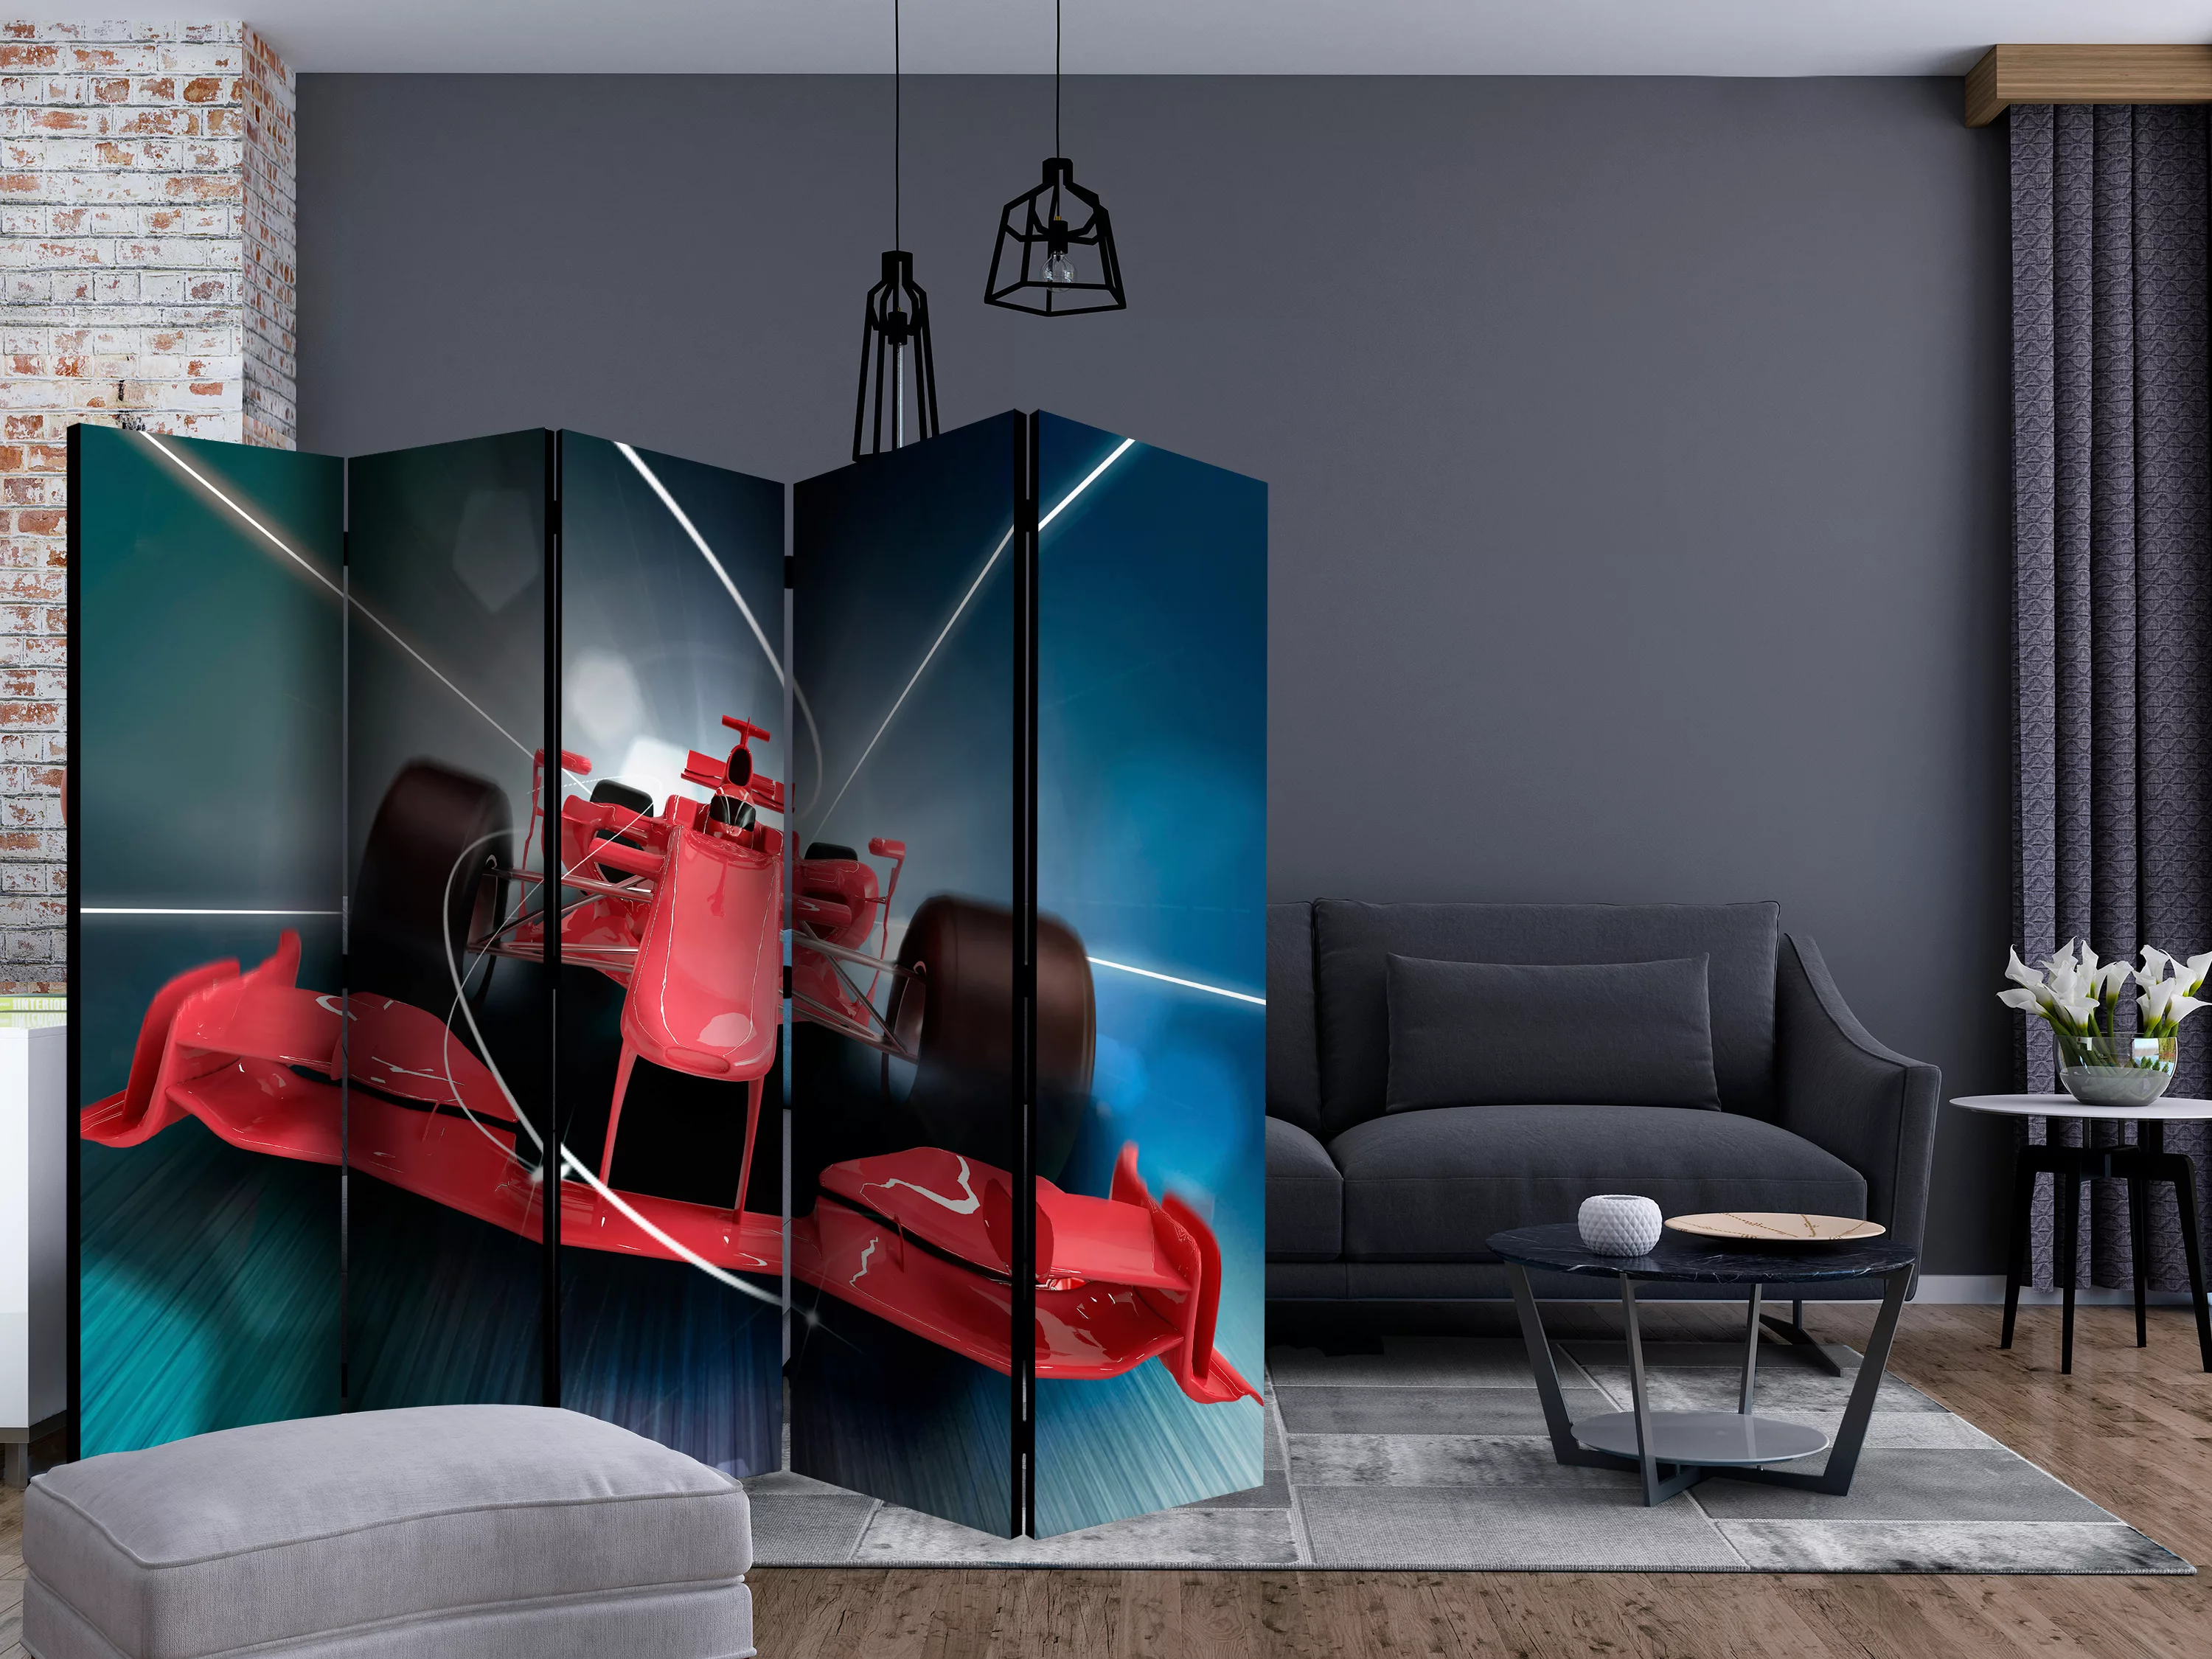 5-teiliges Paravent - Formula 1 Car Ii [room Dividers] günstig online kaufen